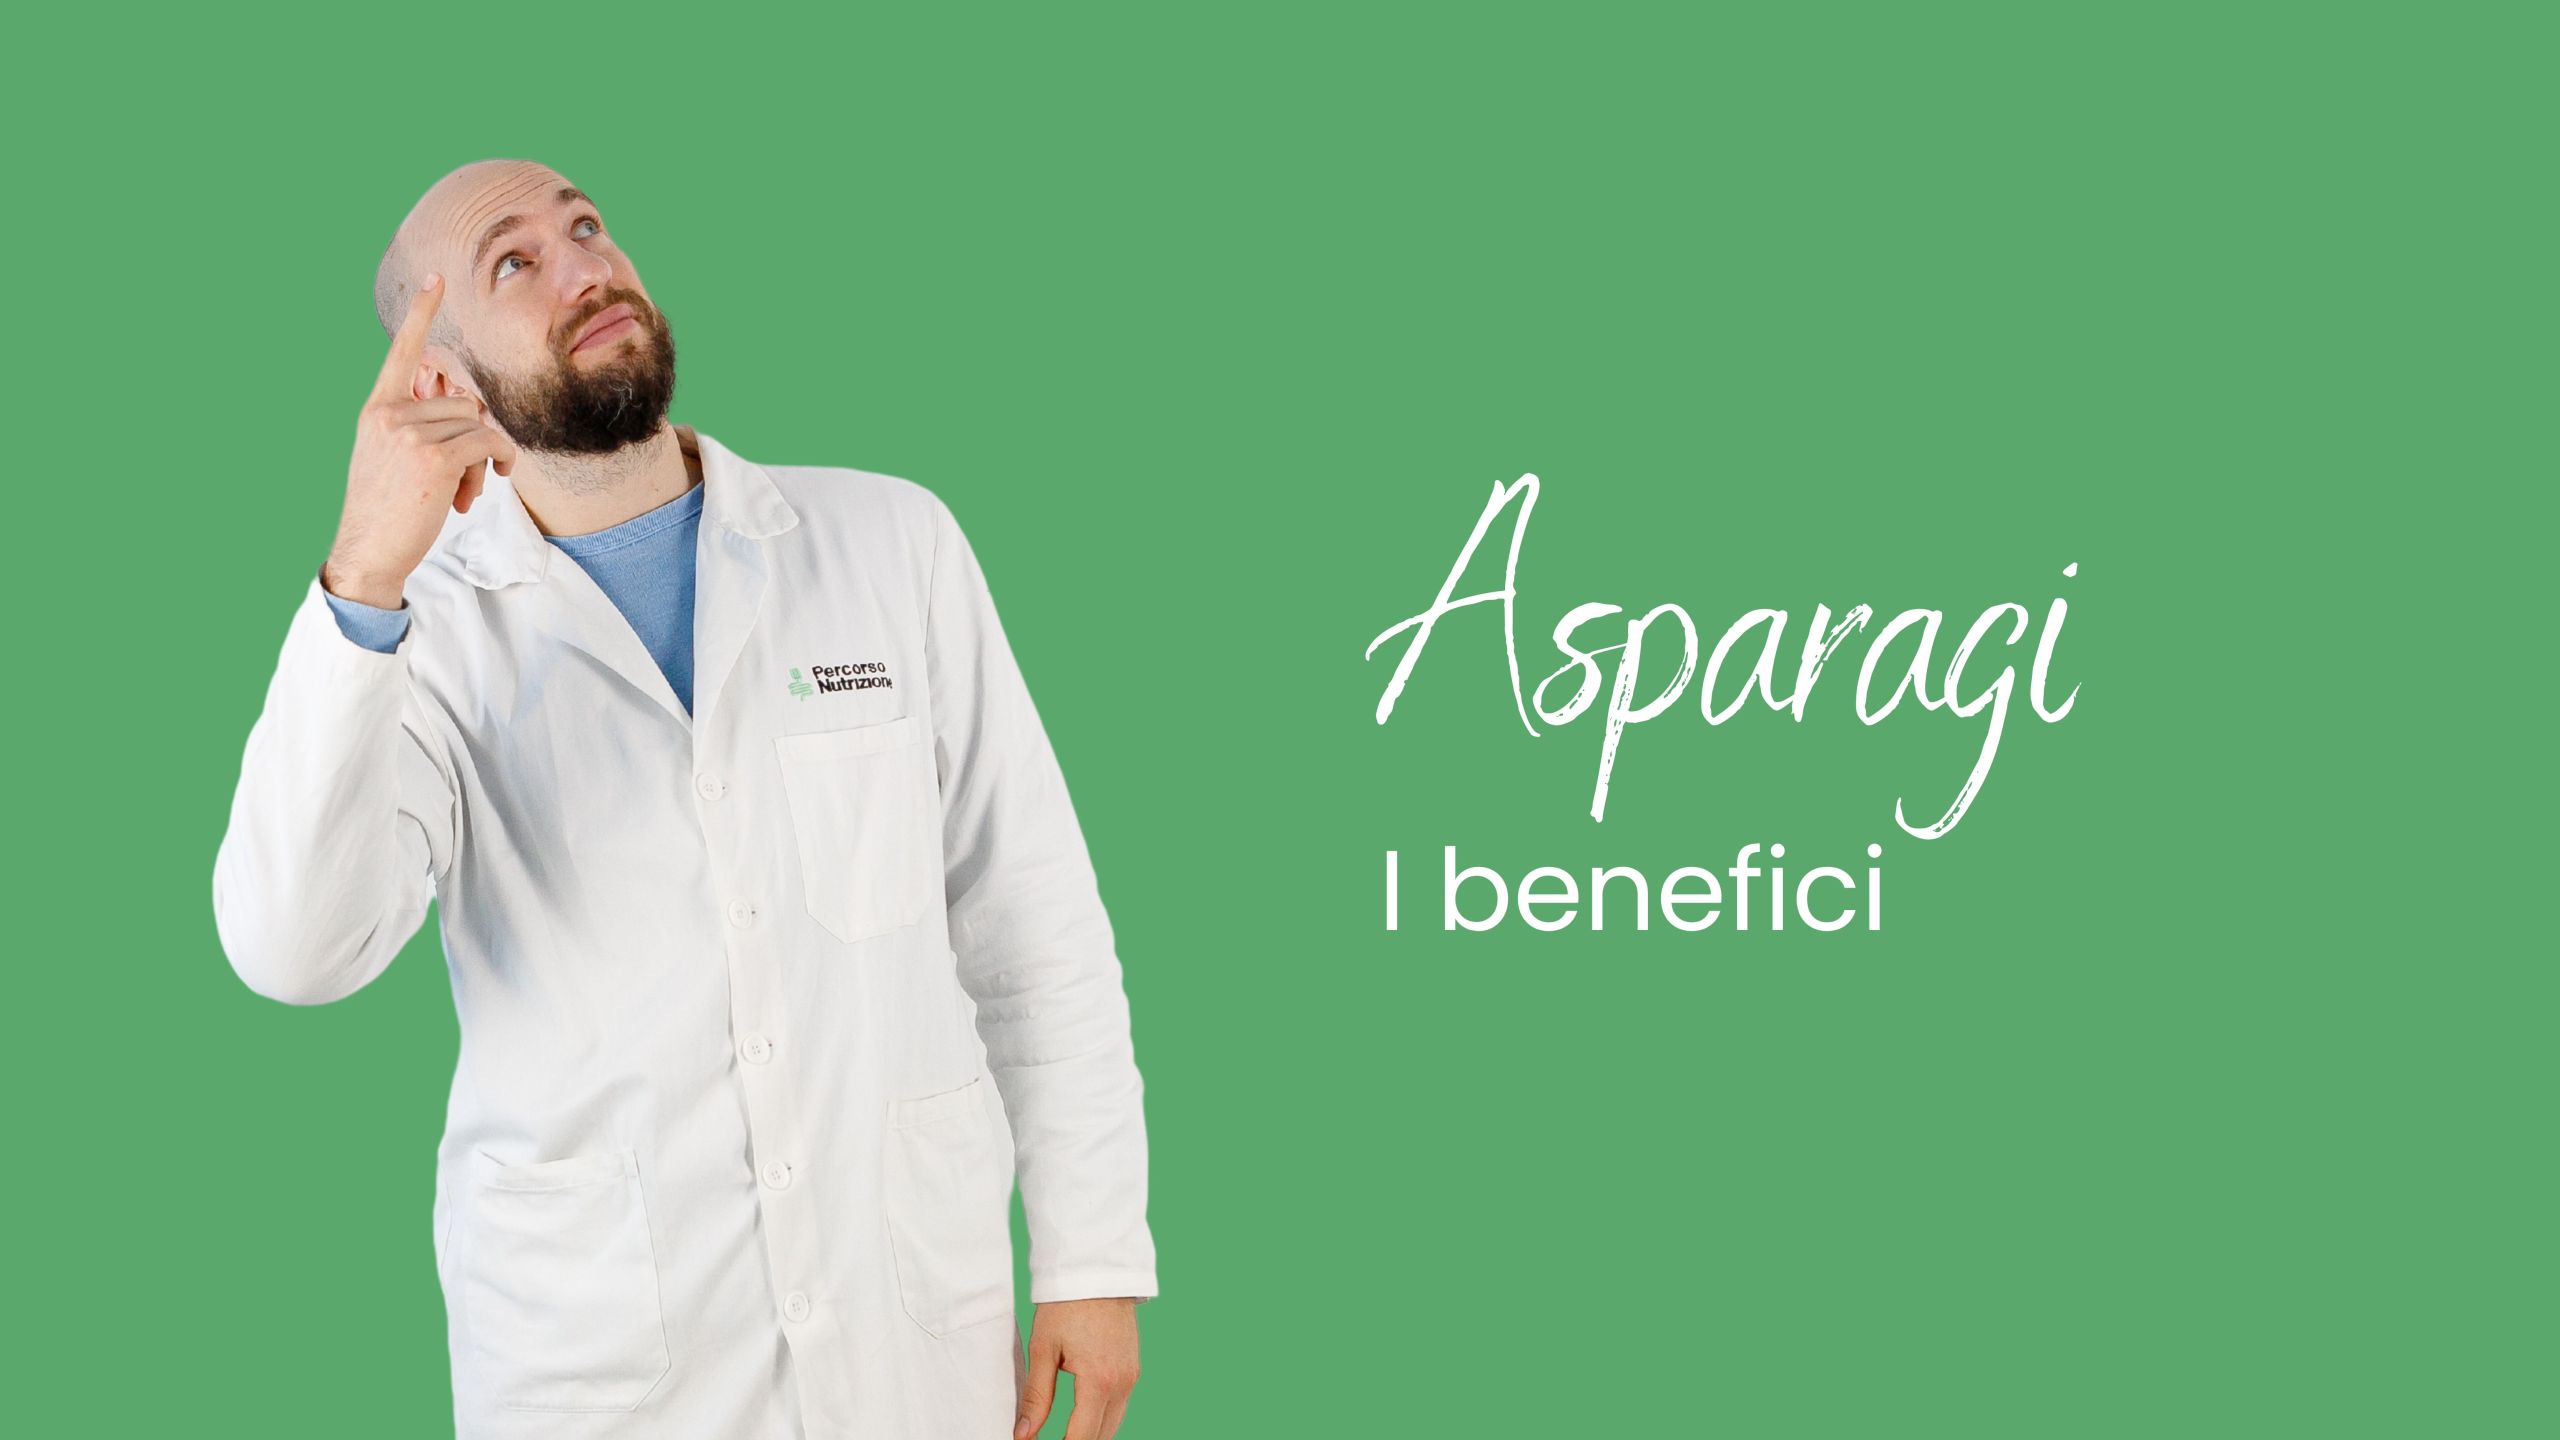 Asparagi: un alleato per la tua salute